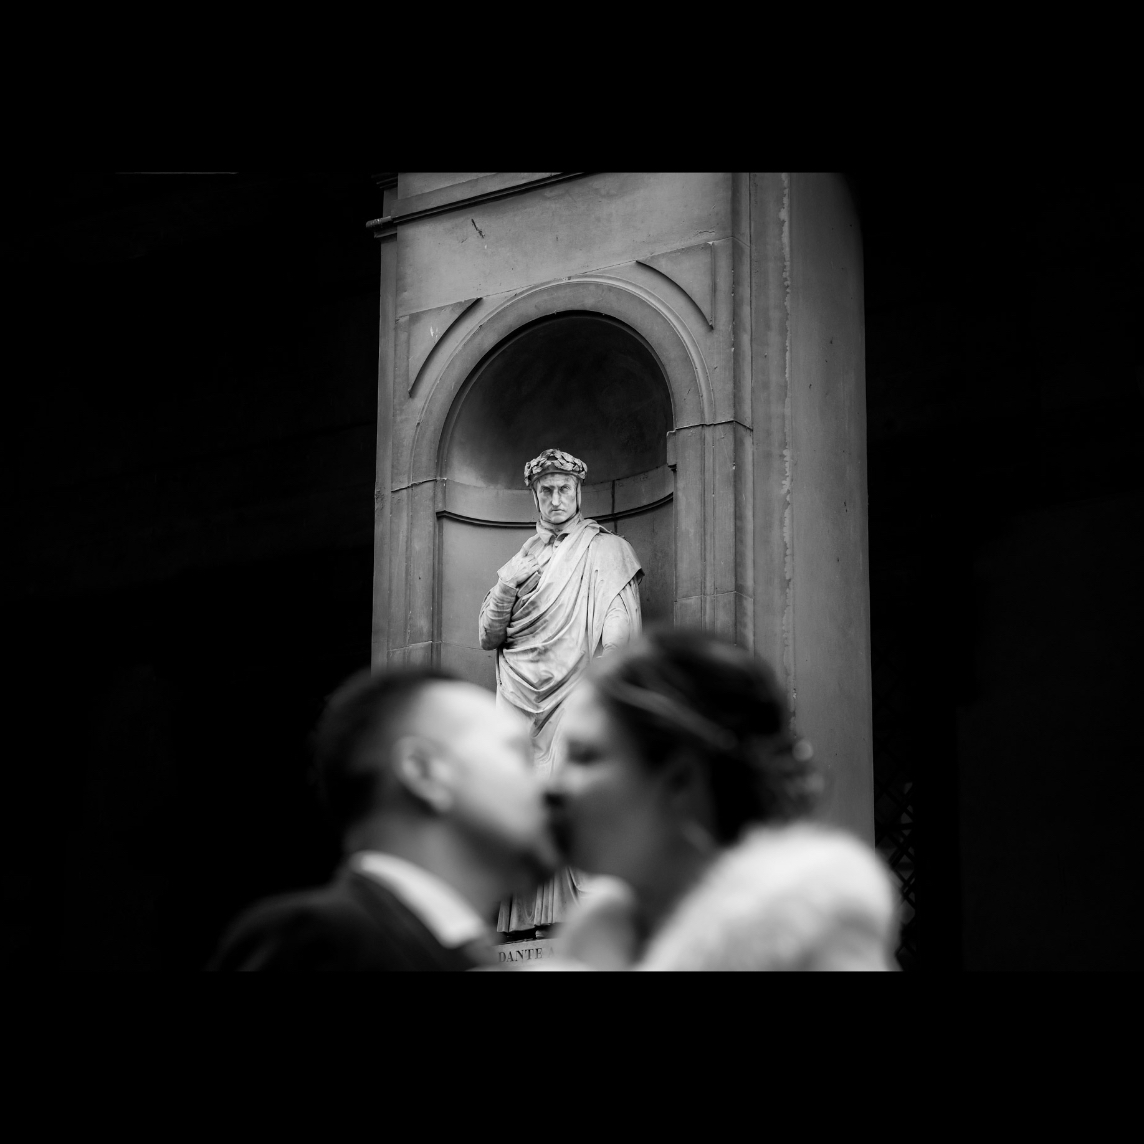 matrimonio, comune, Palazzo Vecchio, fotografo, fotografie, firenze, toscana, no pose, reportage, bianco e nero